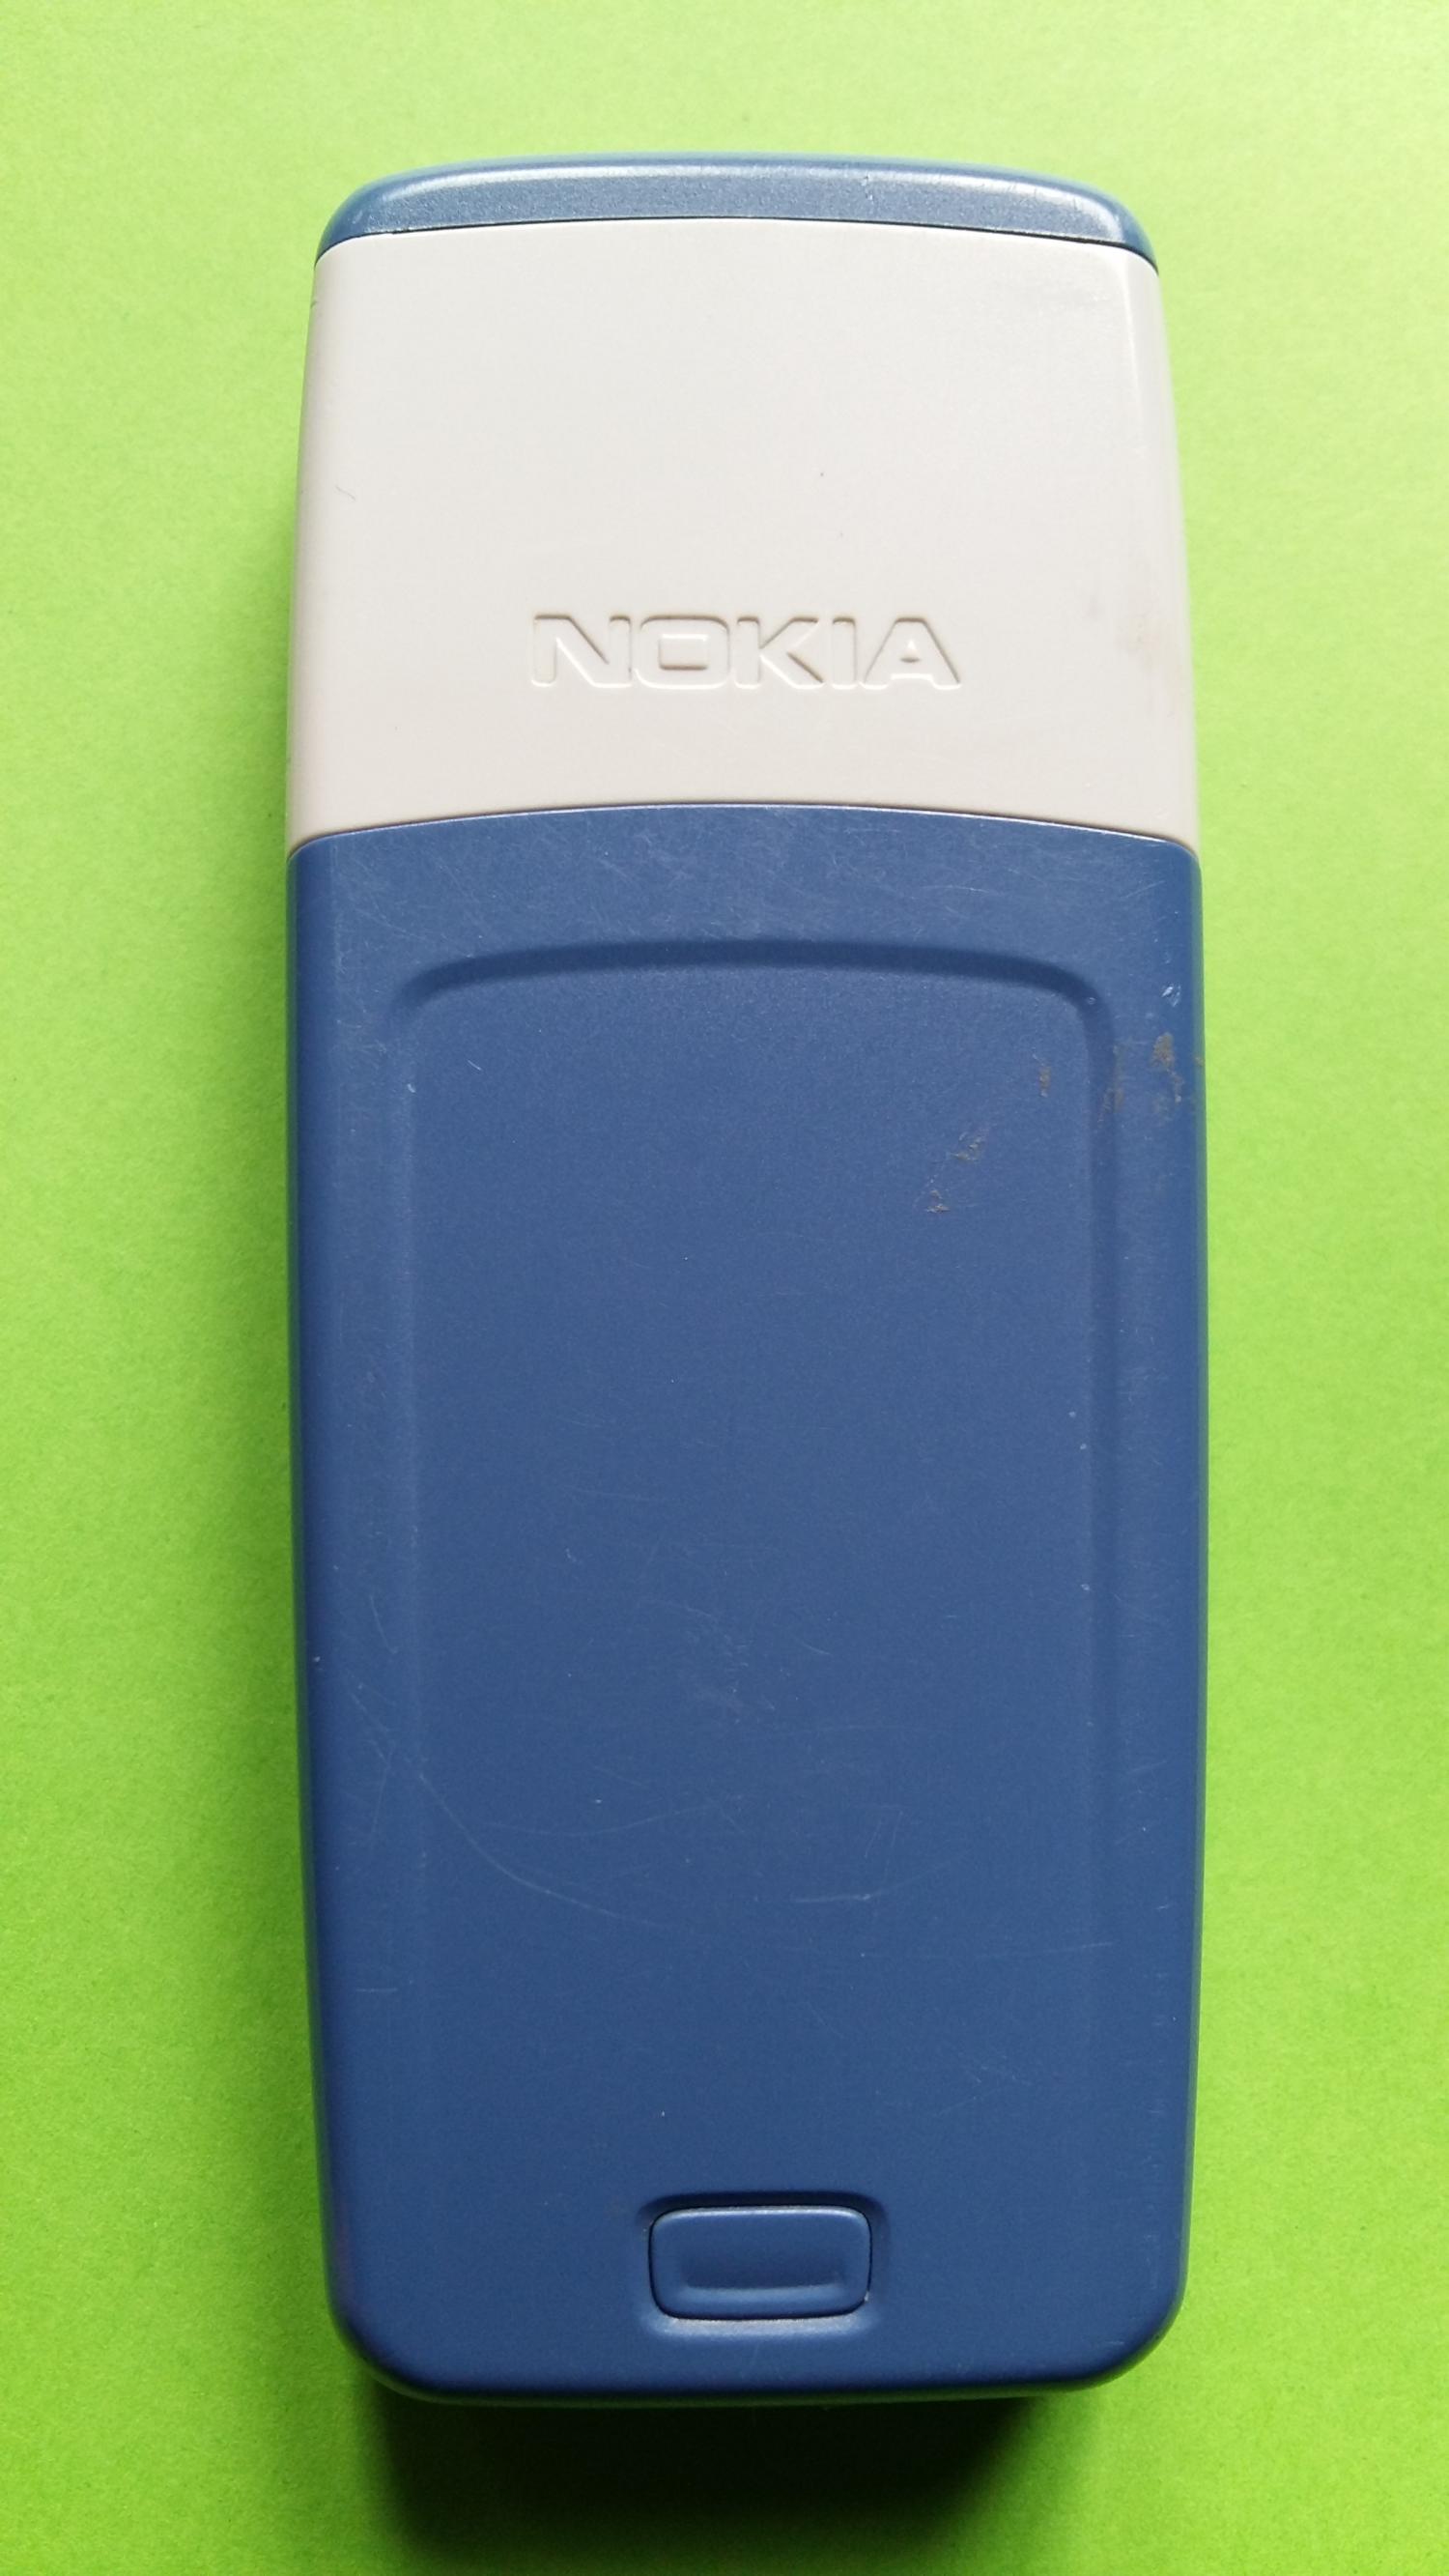 image-7300364-Nokia 1110i (1)2.jpg